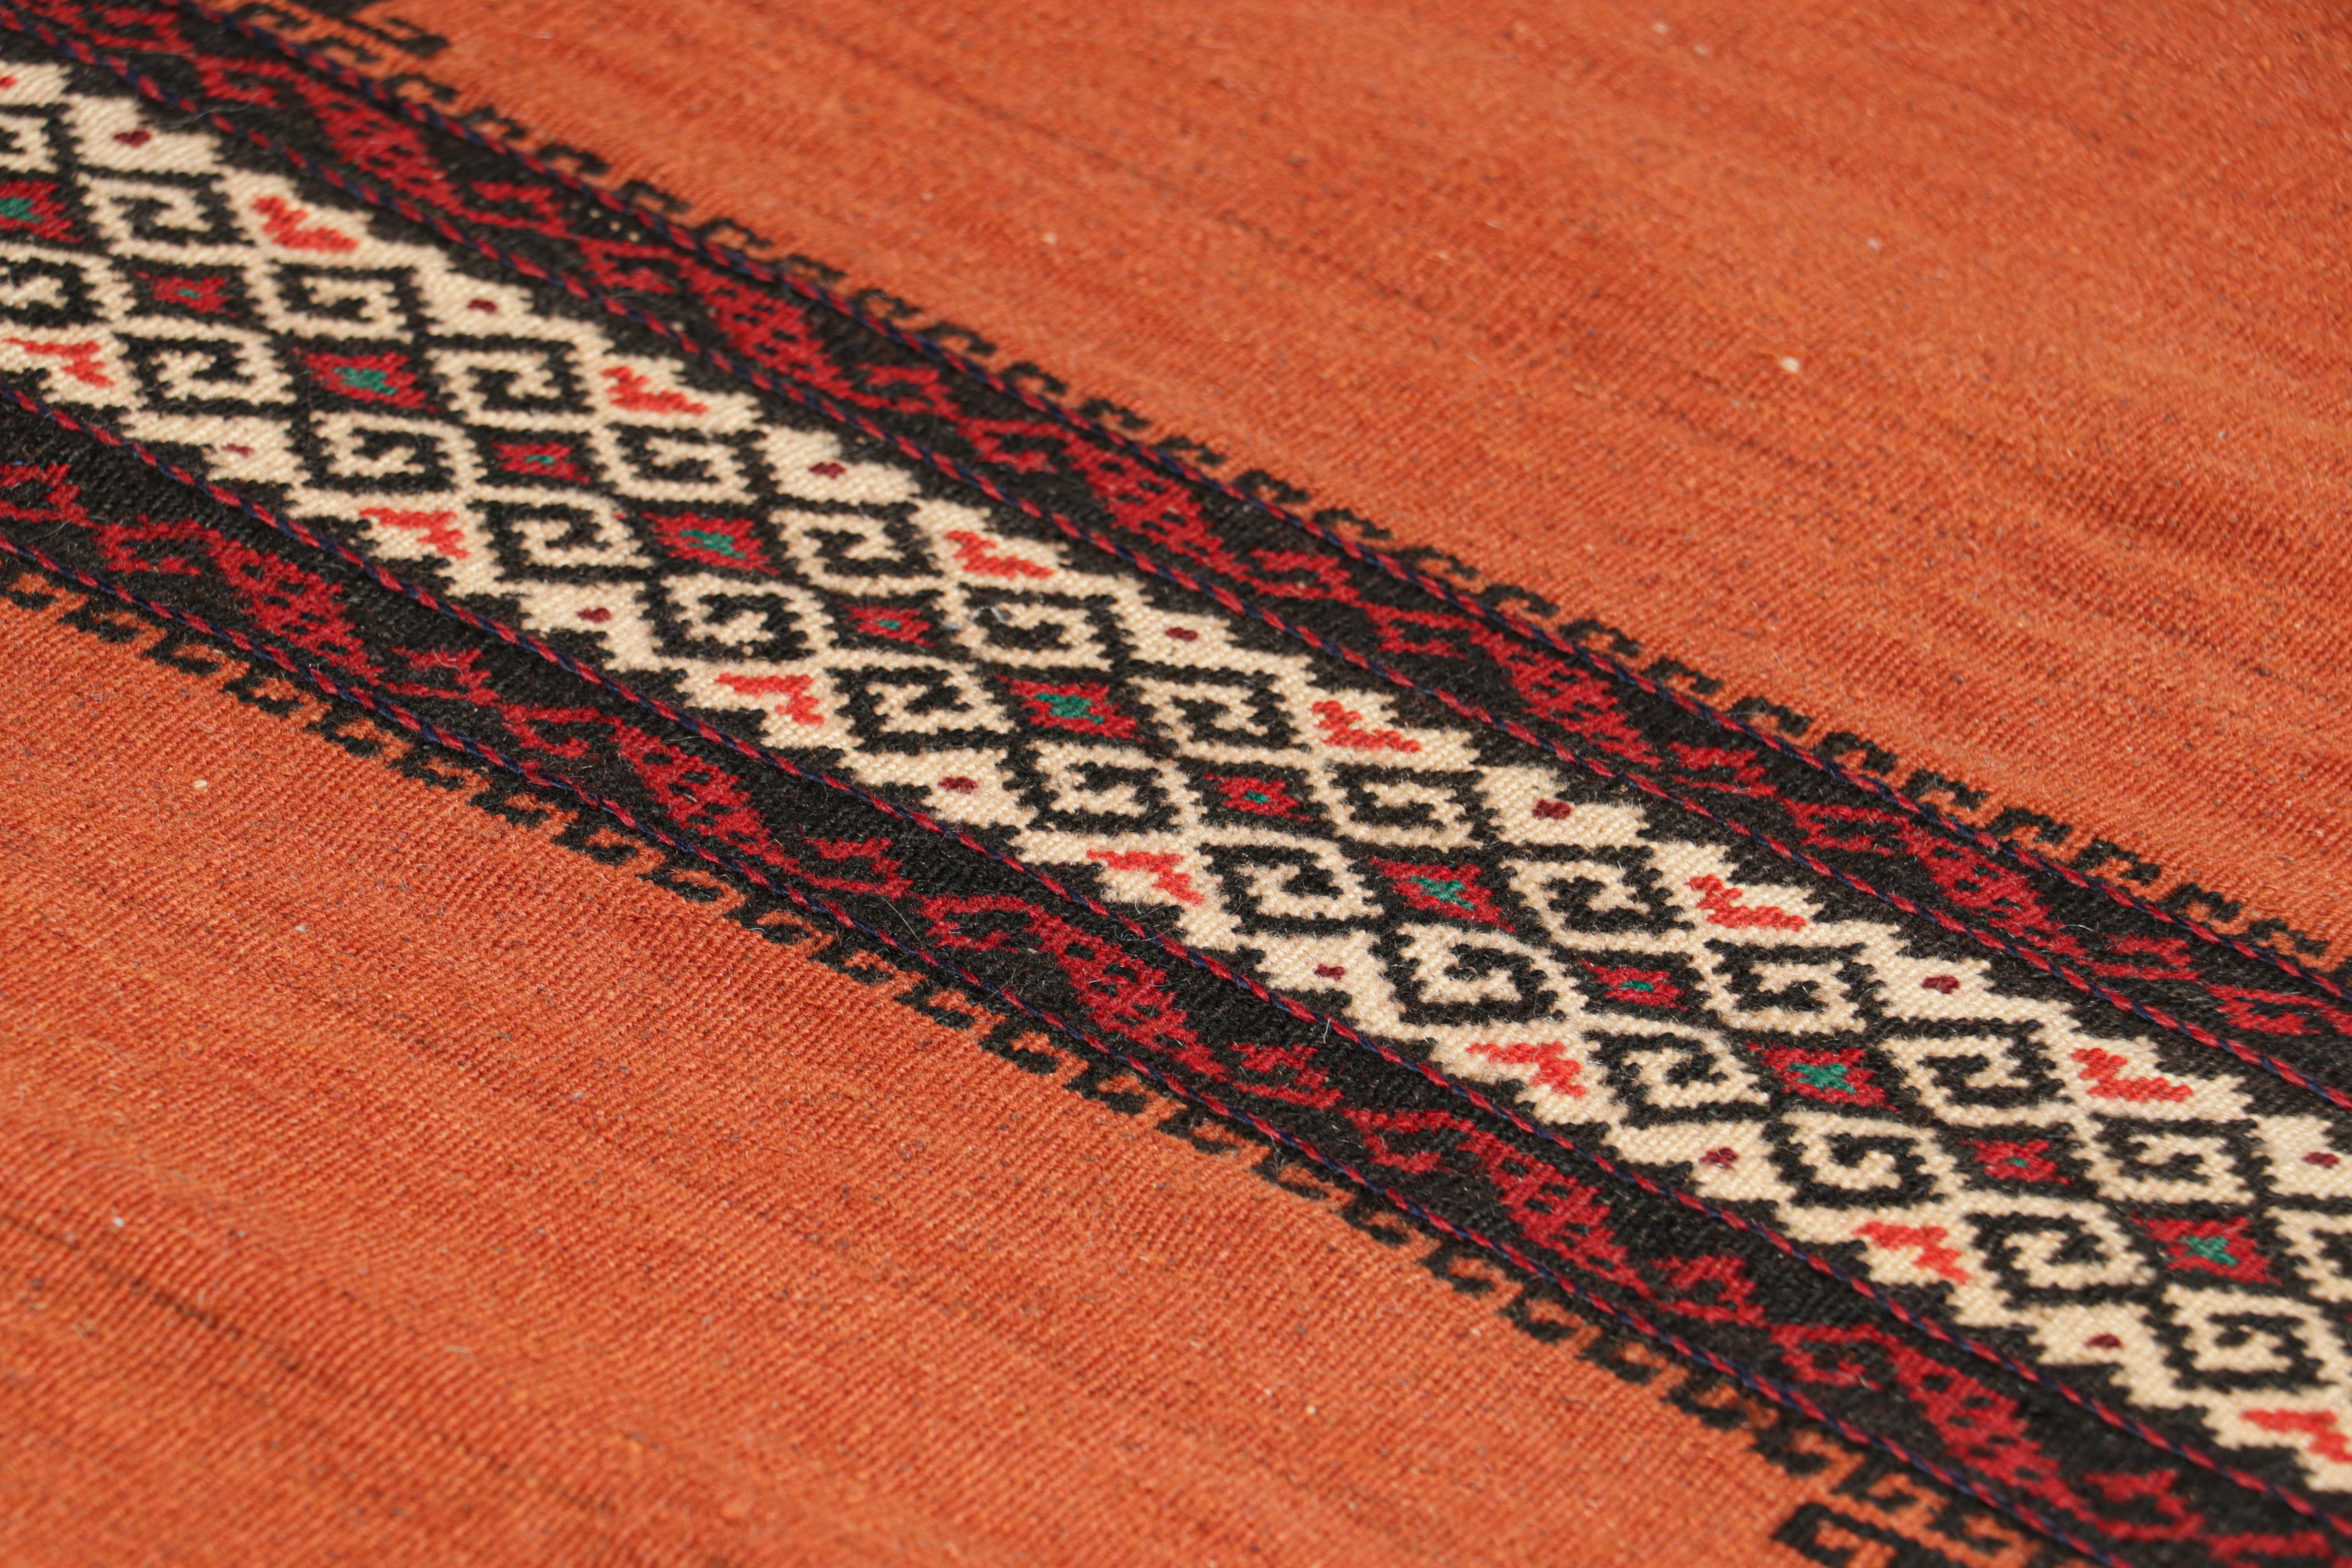 Dieser handgewebte afghanische 2x5-Stammeskelim aus Wolle (ca. 1950-1960) ist ein Sammlerstück, das im Nomadenalltag möglicherweise als Tischdecke verwendet wurde, ähnlich wie die persischen Sofreh-Kelims.

Über das Design: 

Dieses archaische